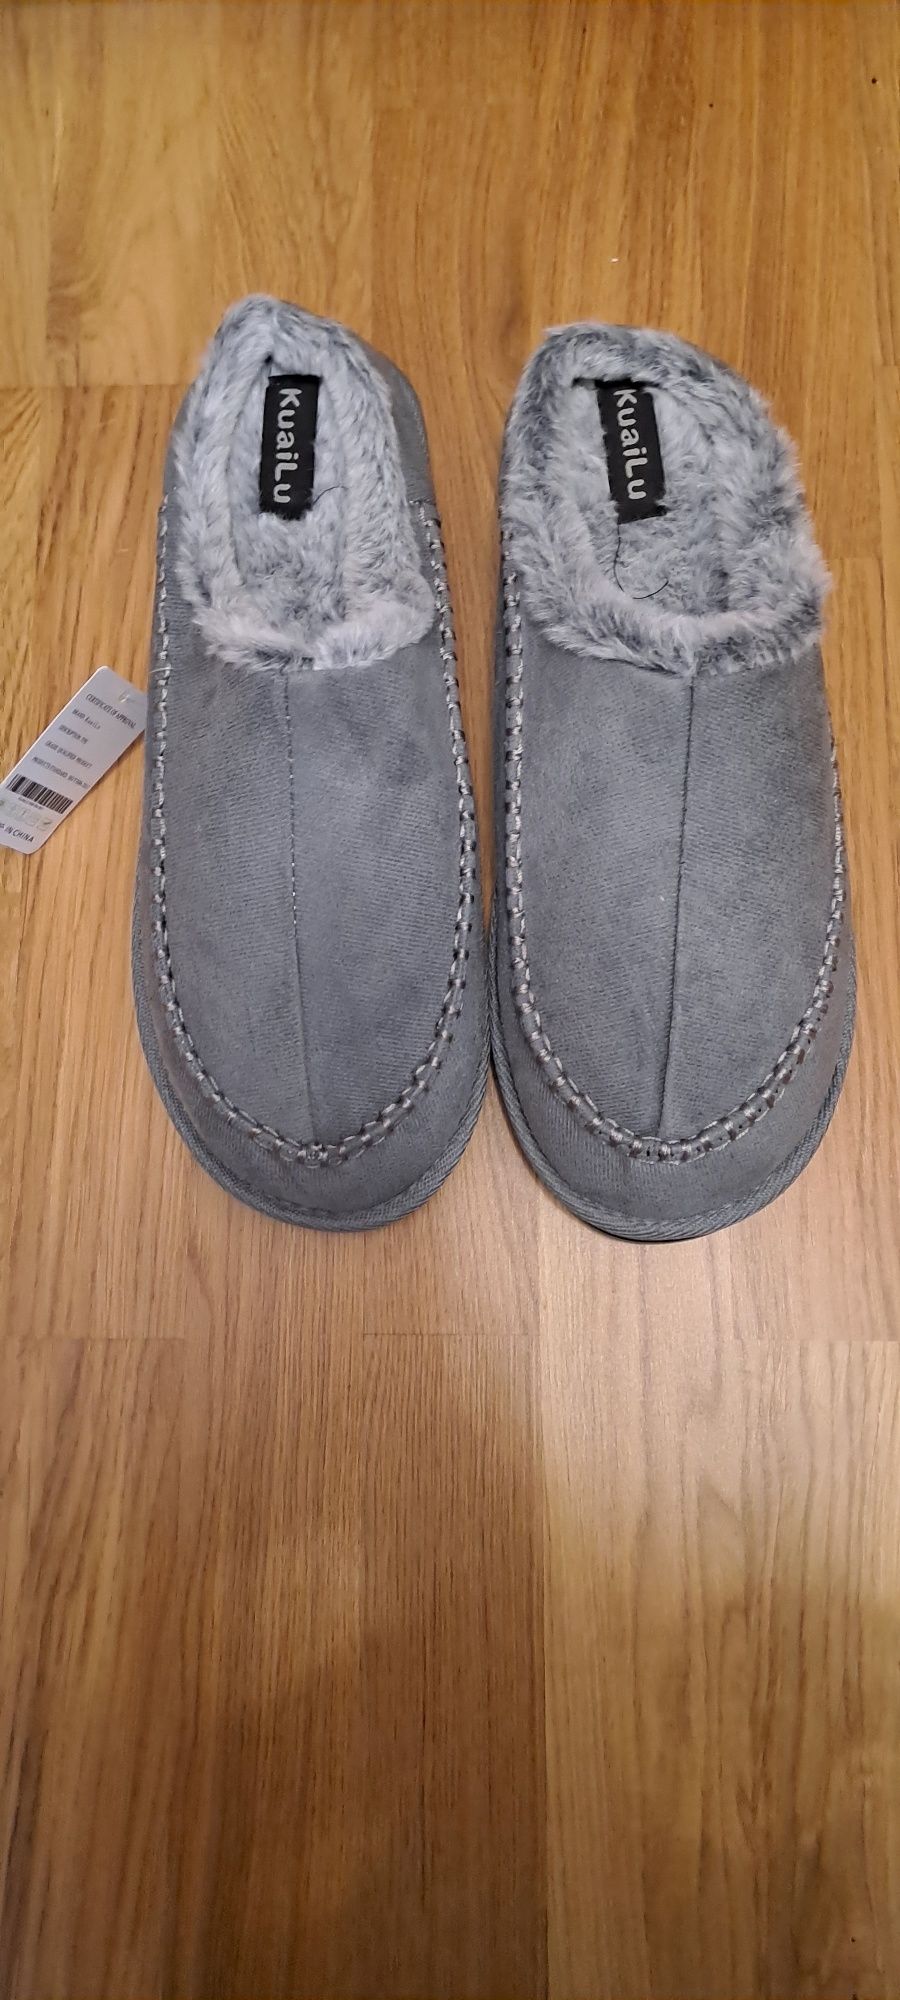 Szare pantofle zimowe ocieplane